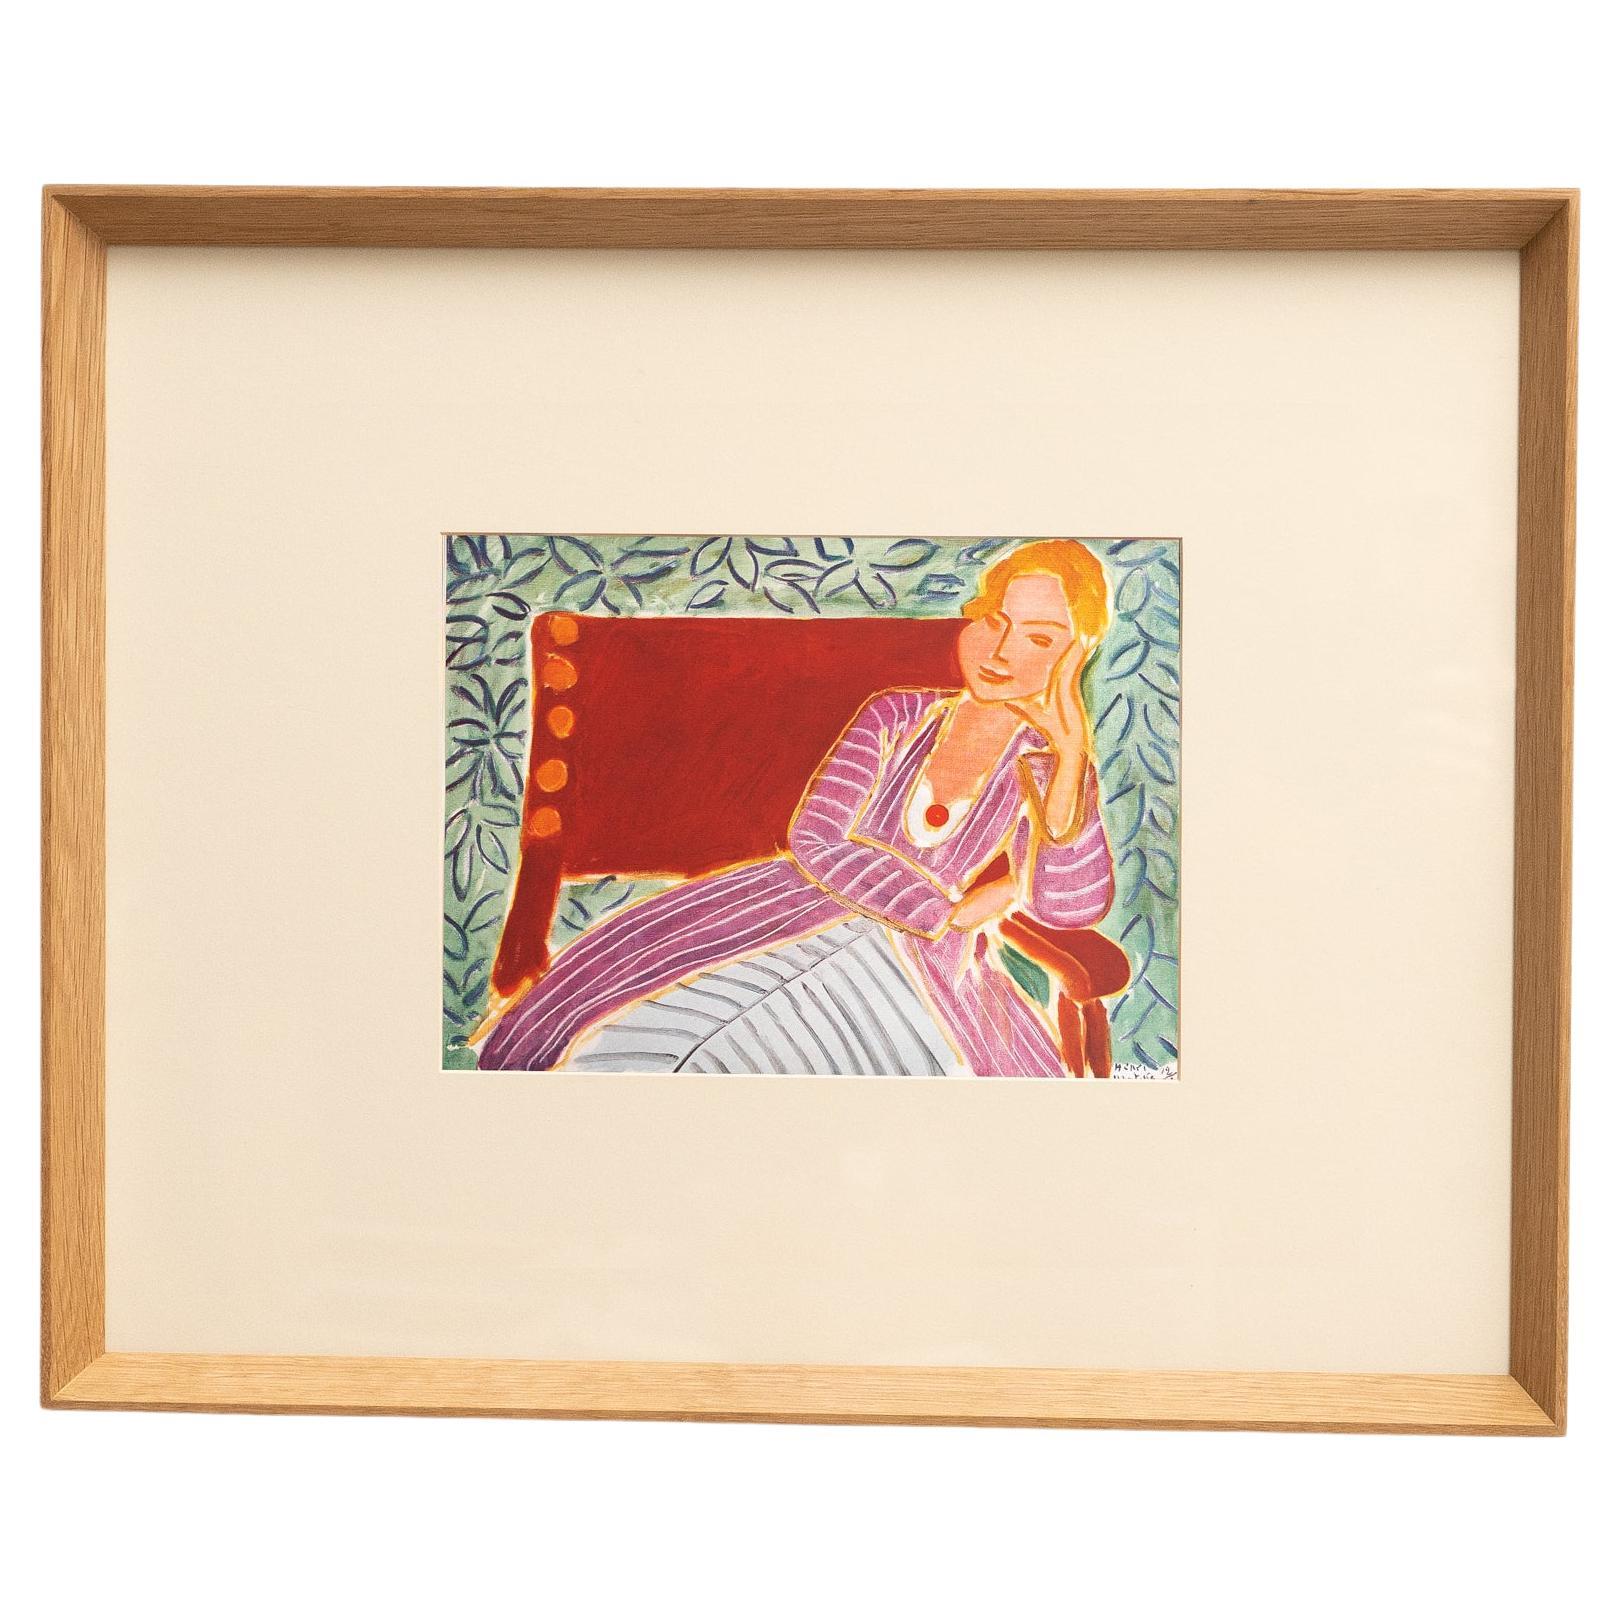 Seltene Lithographie von Henri Matisse, Editions du Chene, 1943